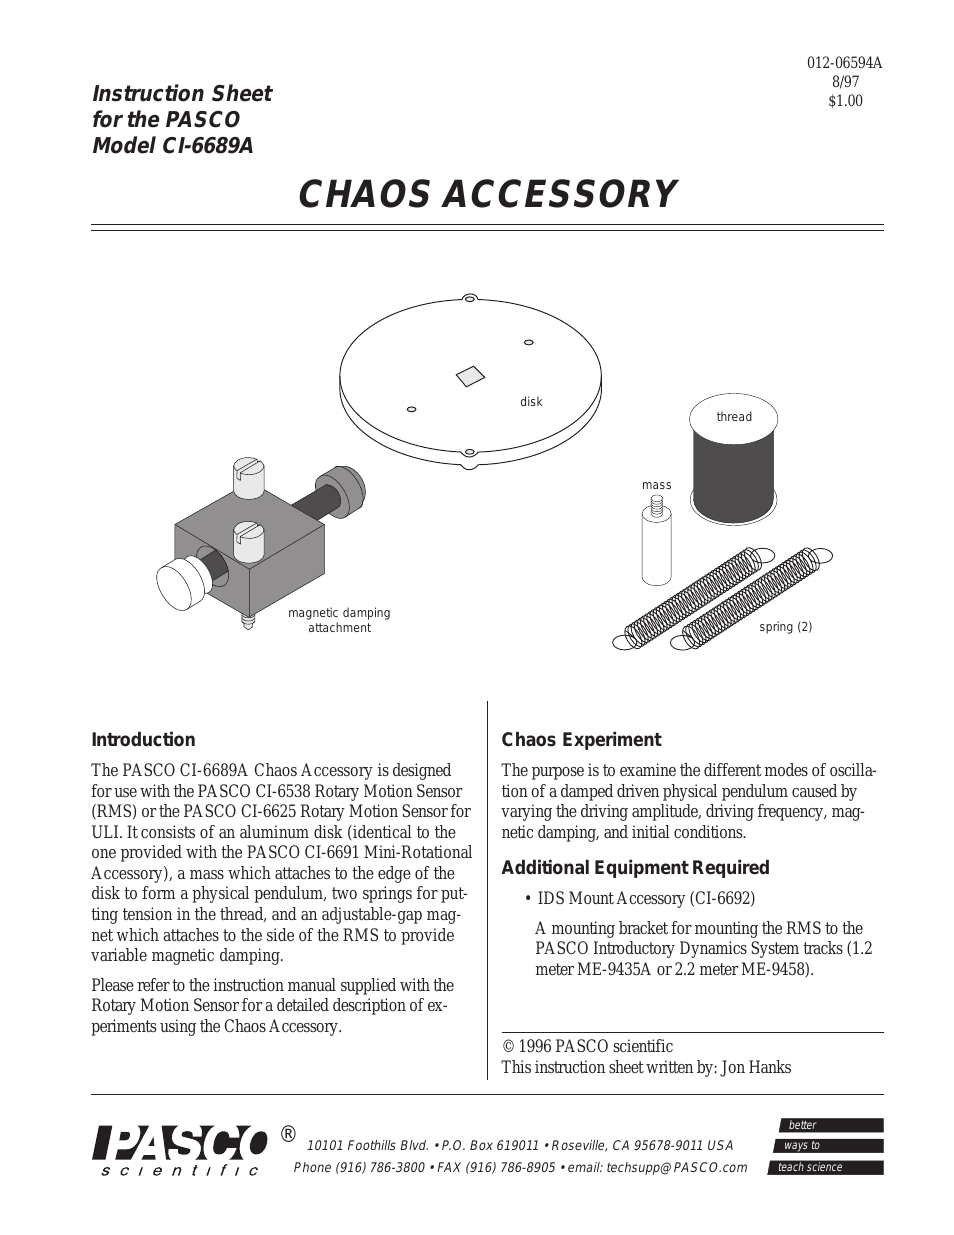 CI-6689A CHAOS ACCESSORY